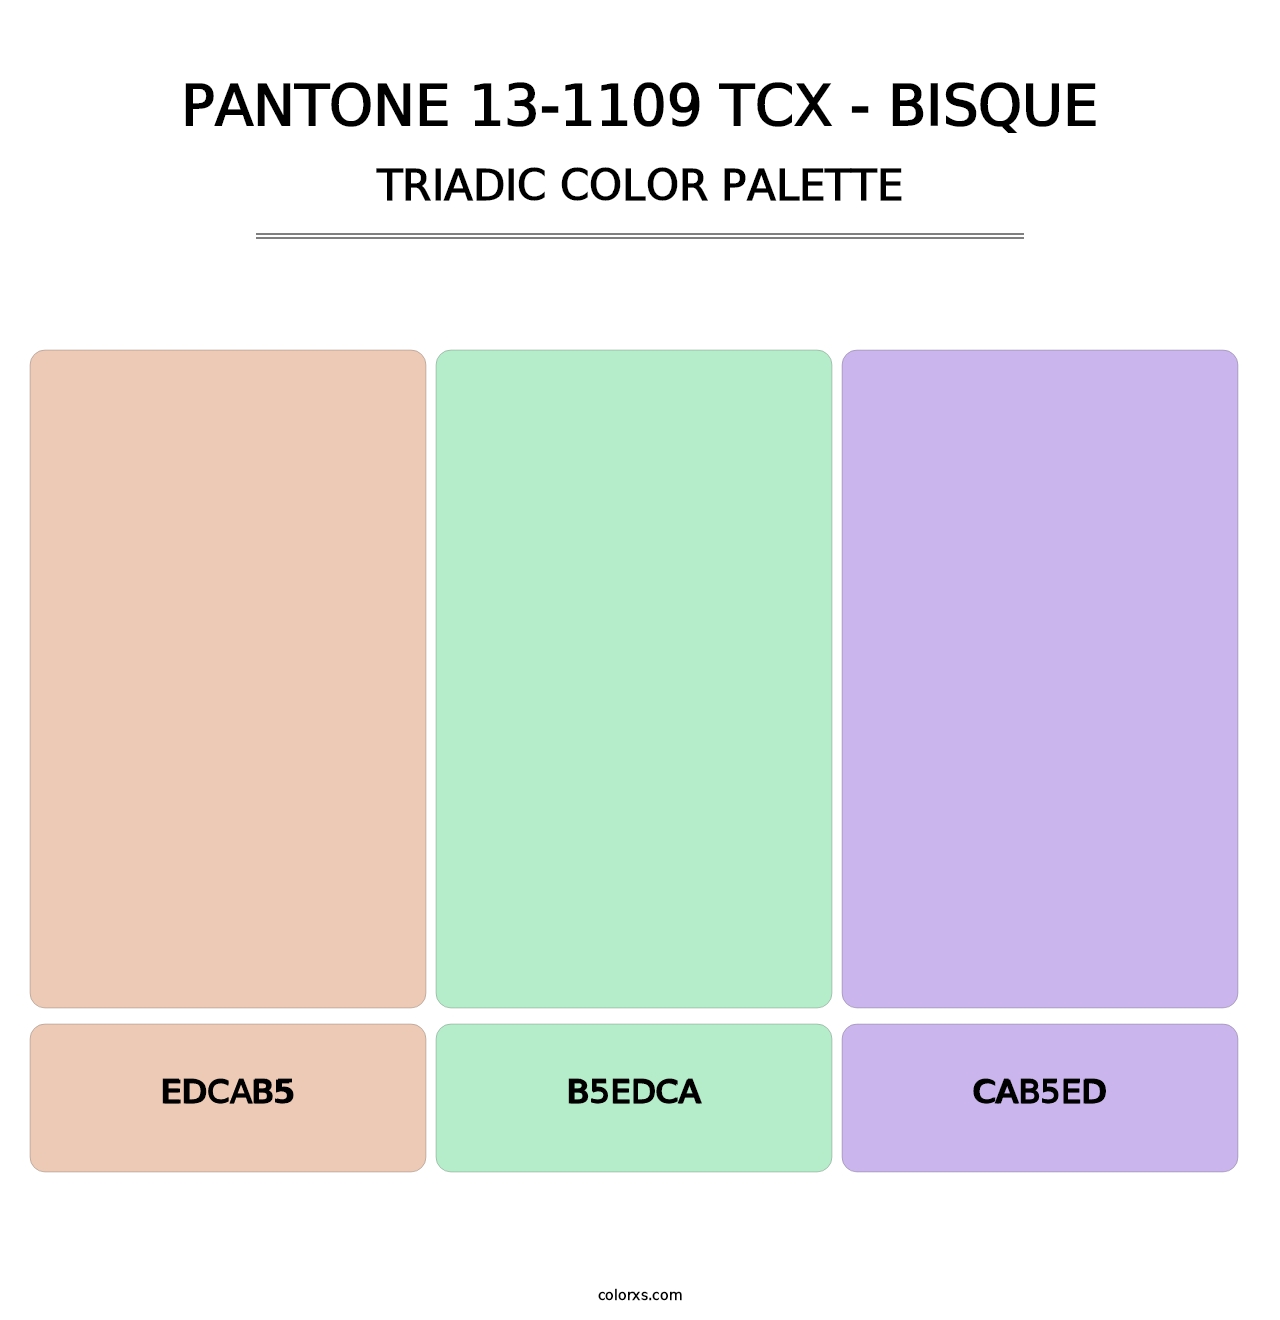 PANTONE 13-1109 TCX - Bisque - Triadic Color Palette